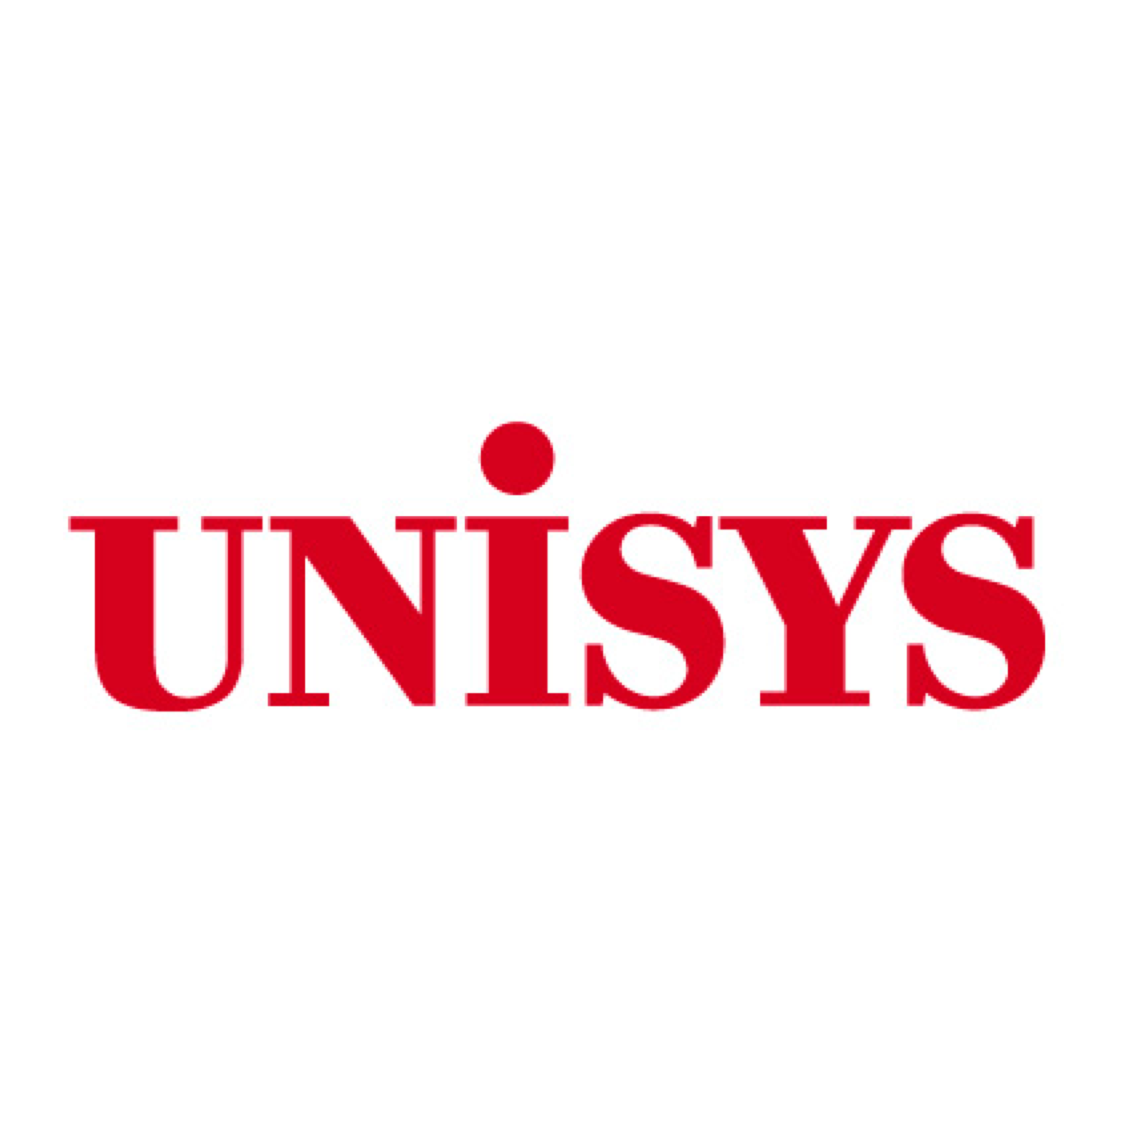 Nihon Unisys, Ltd.